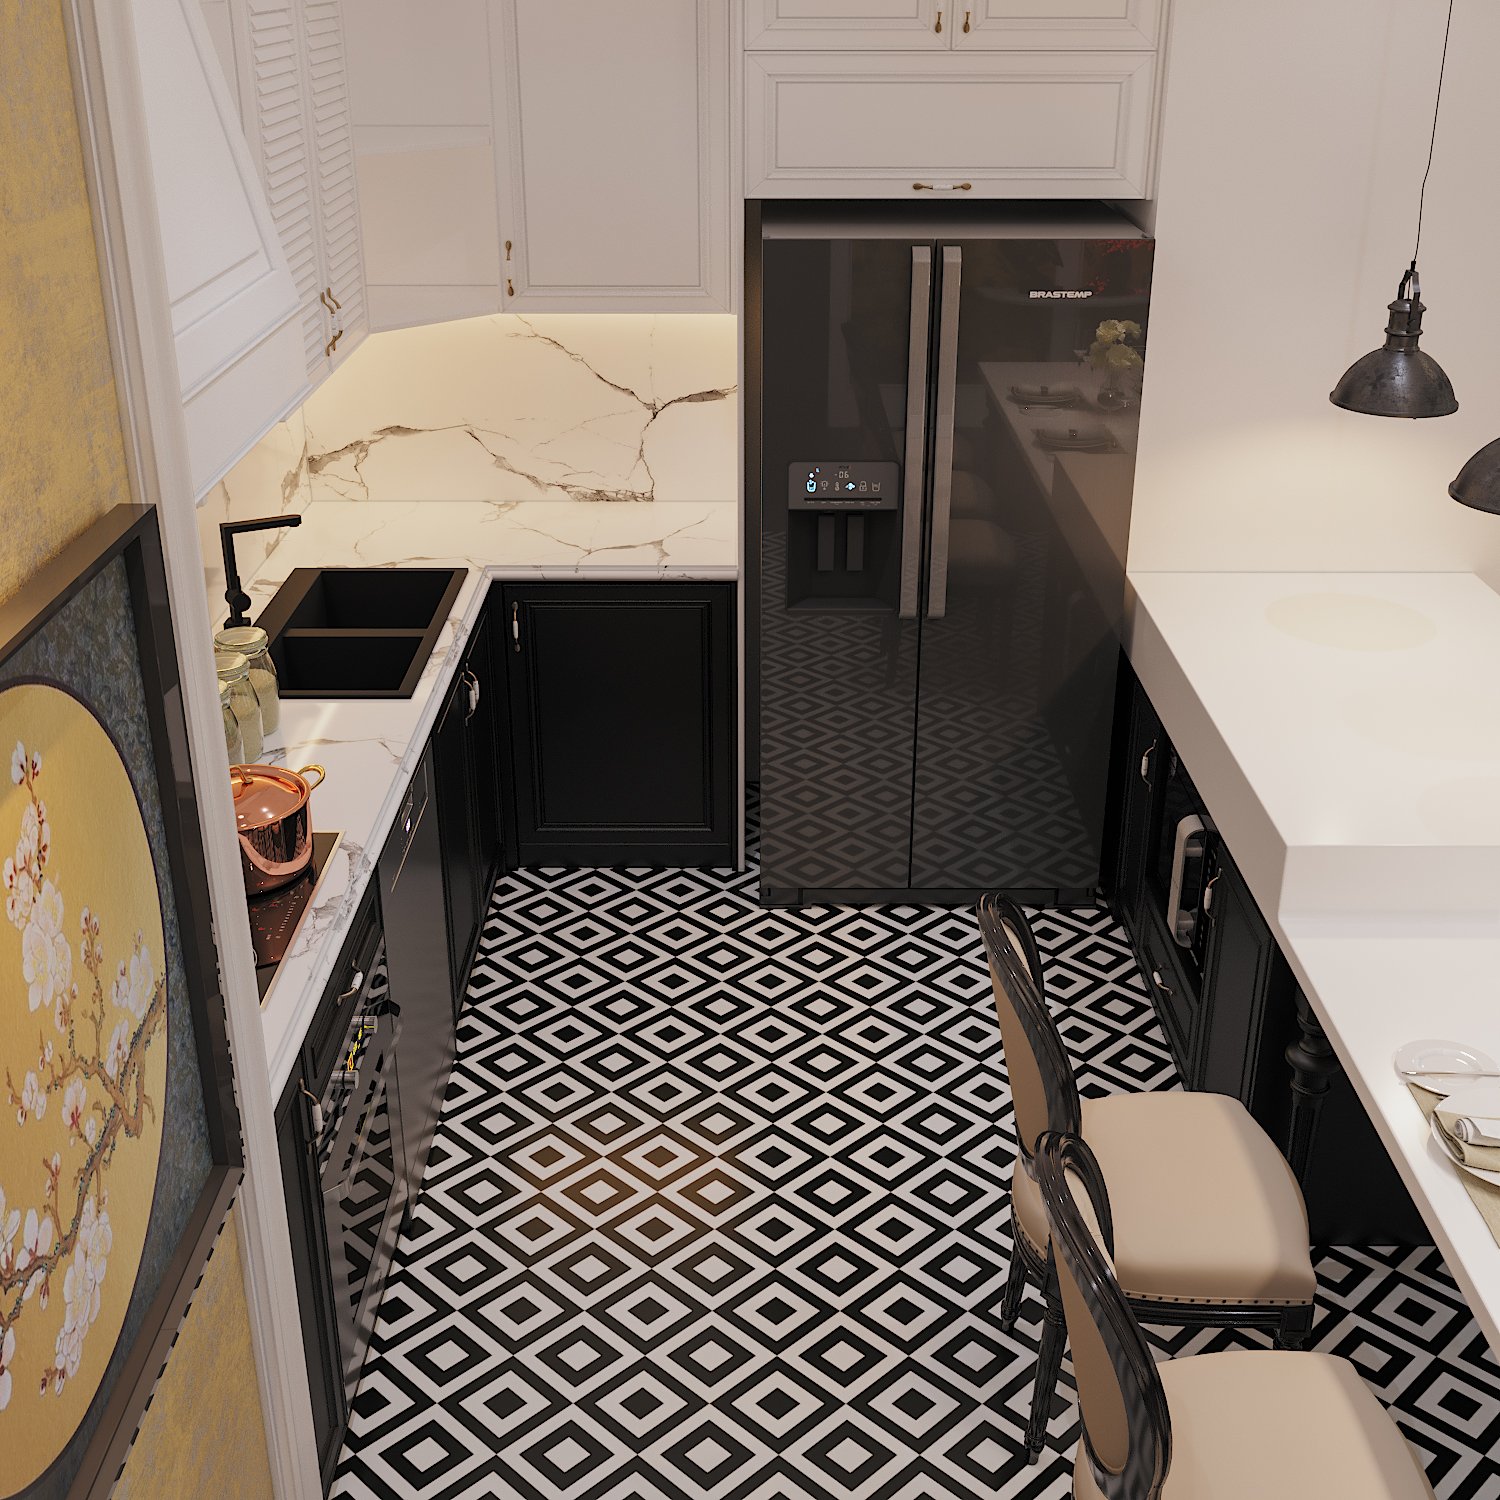 Tủ bếp dưới màu đen tuyền kết hợp hài hòa với gạch lát sàn giúp gia tăng chiều sâu cho không gian nấu nướng.